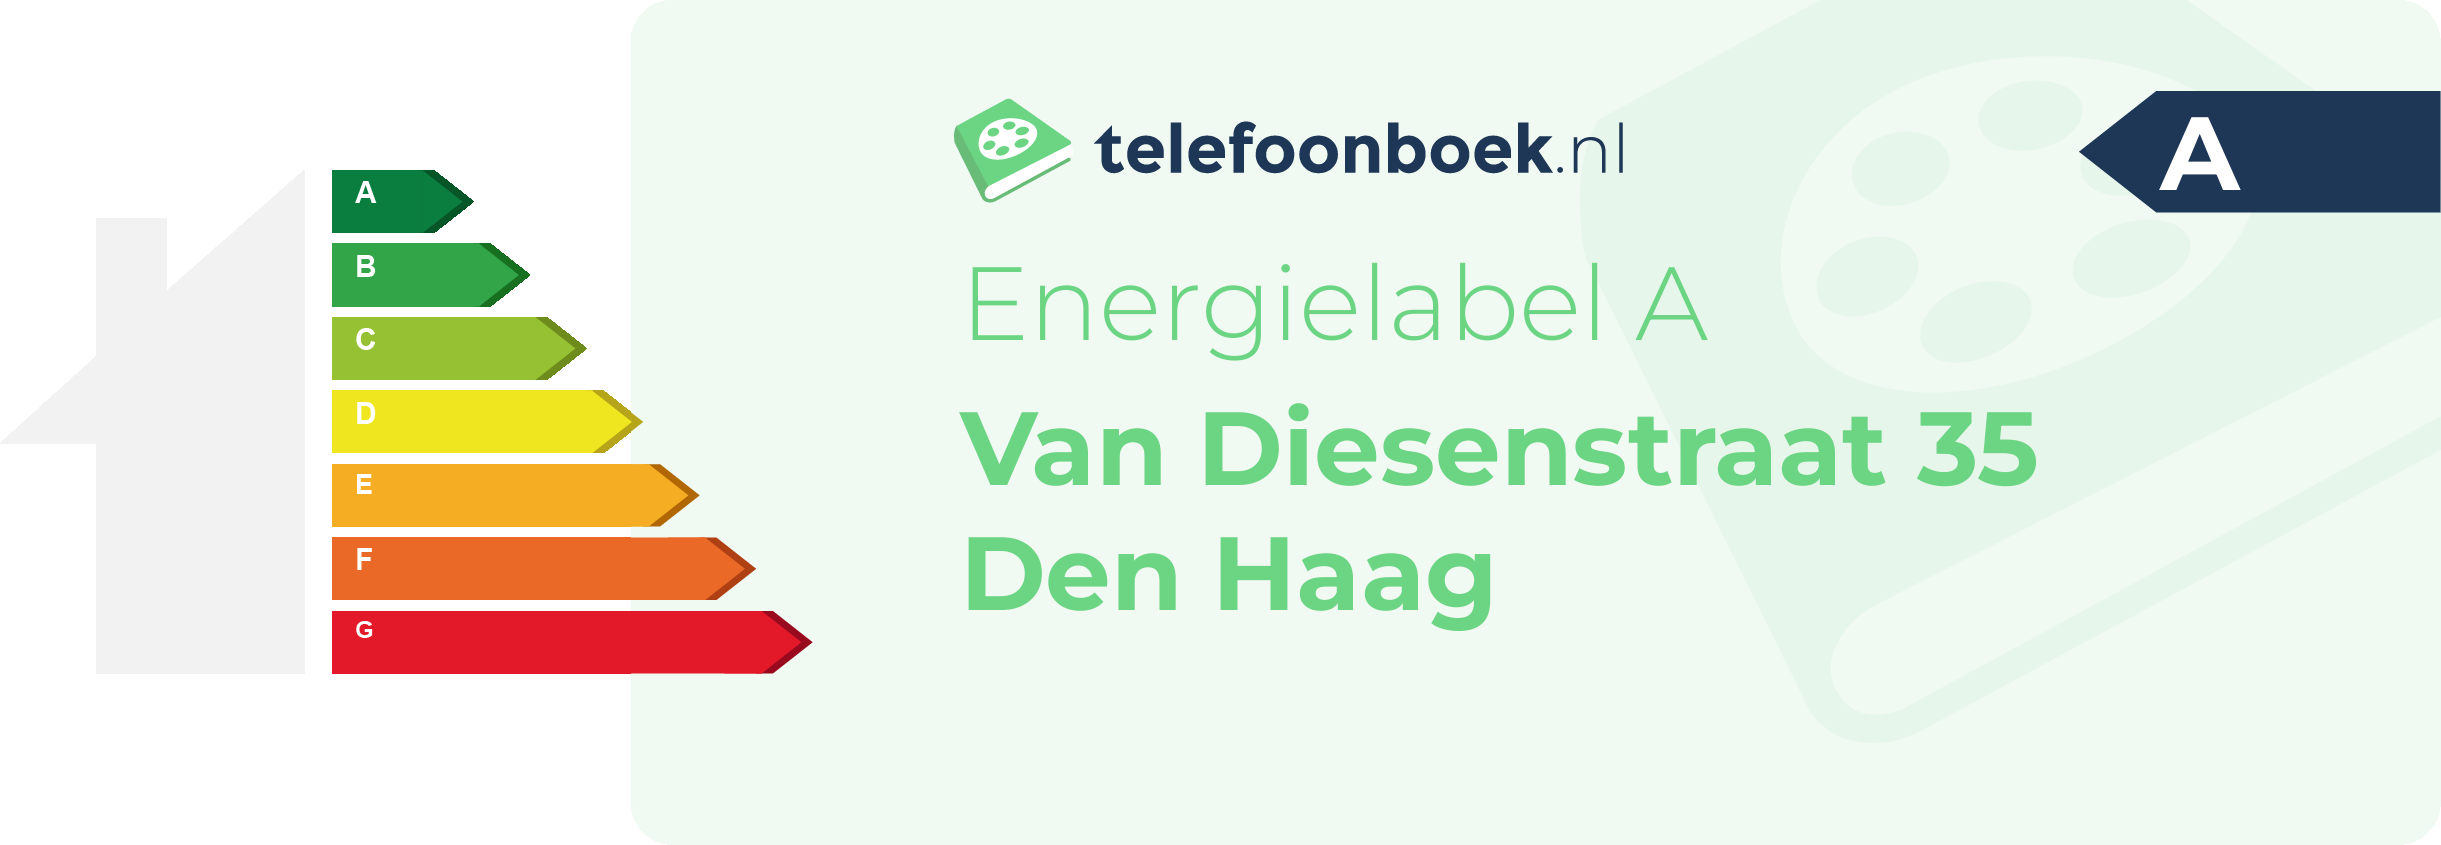 Energielabel Van Diesenstraat 35 Den Haag